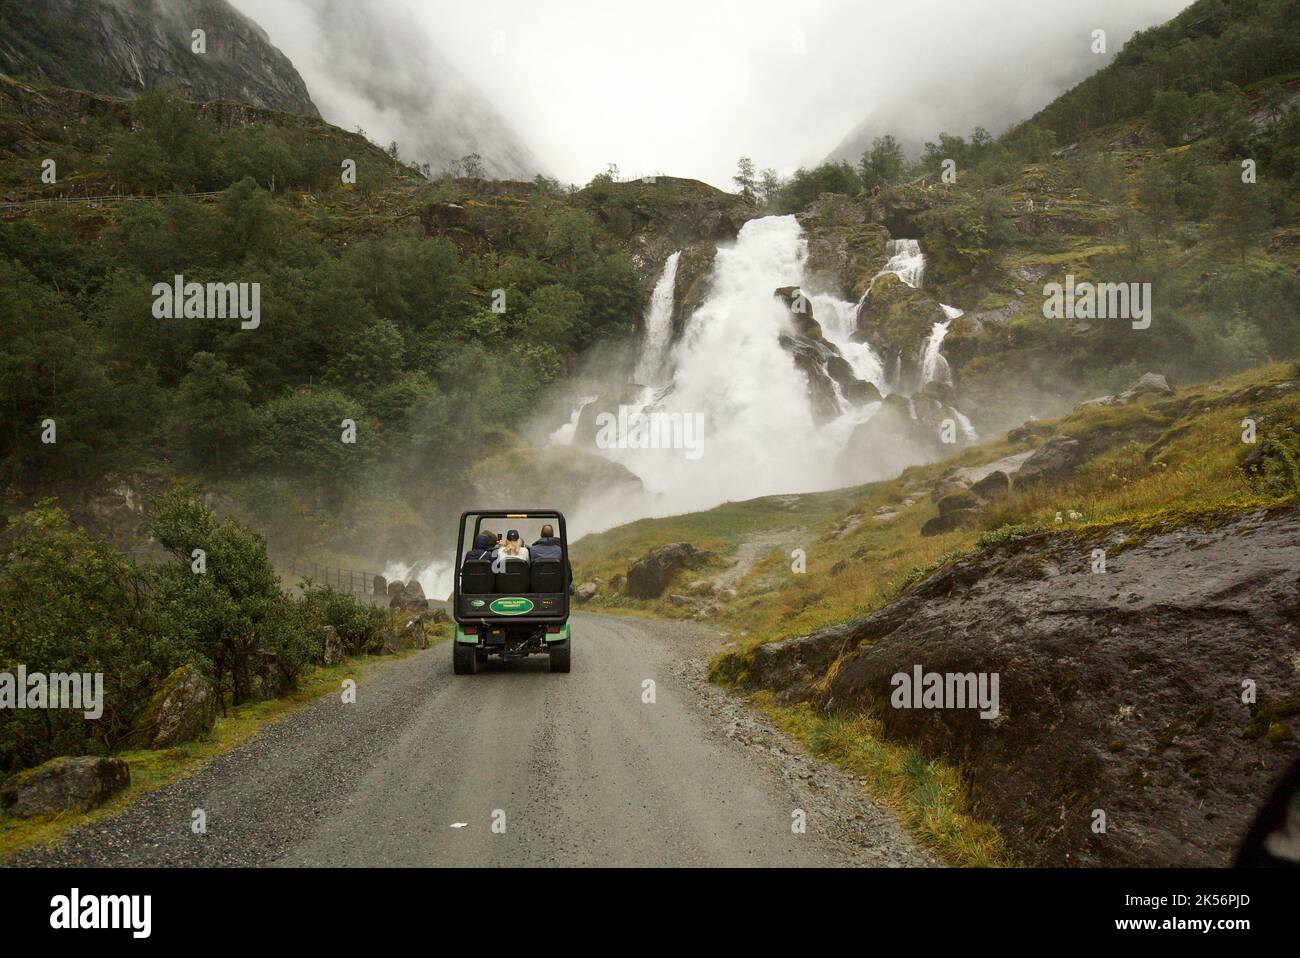 Una troll car che guida su una montagna, passando le cascate, fino al ghiacciaio di Briksdal, Briksdalsbreen. Una navetta turistica per il ghiacciaio - Briksdalsbre. Foto Stock